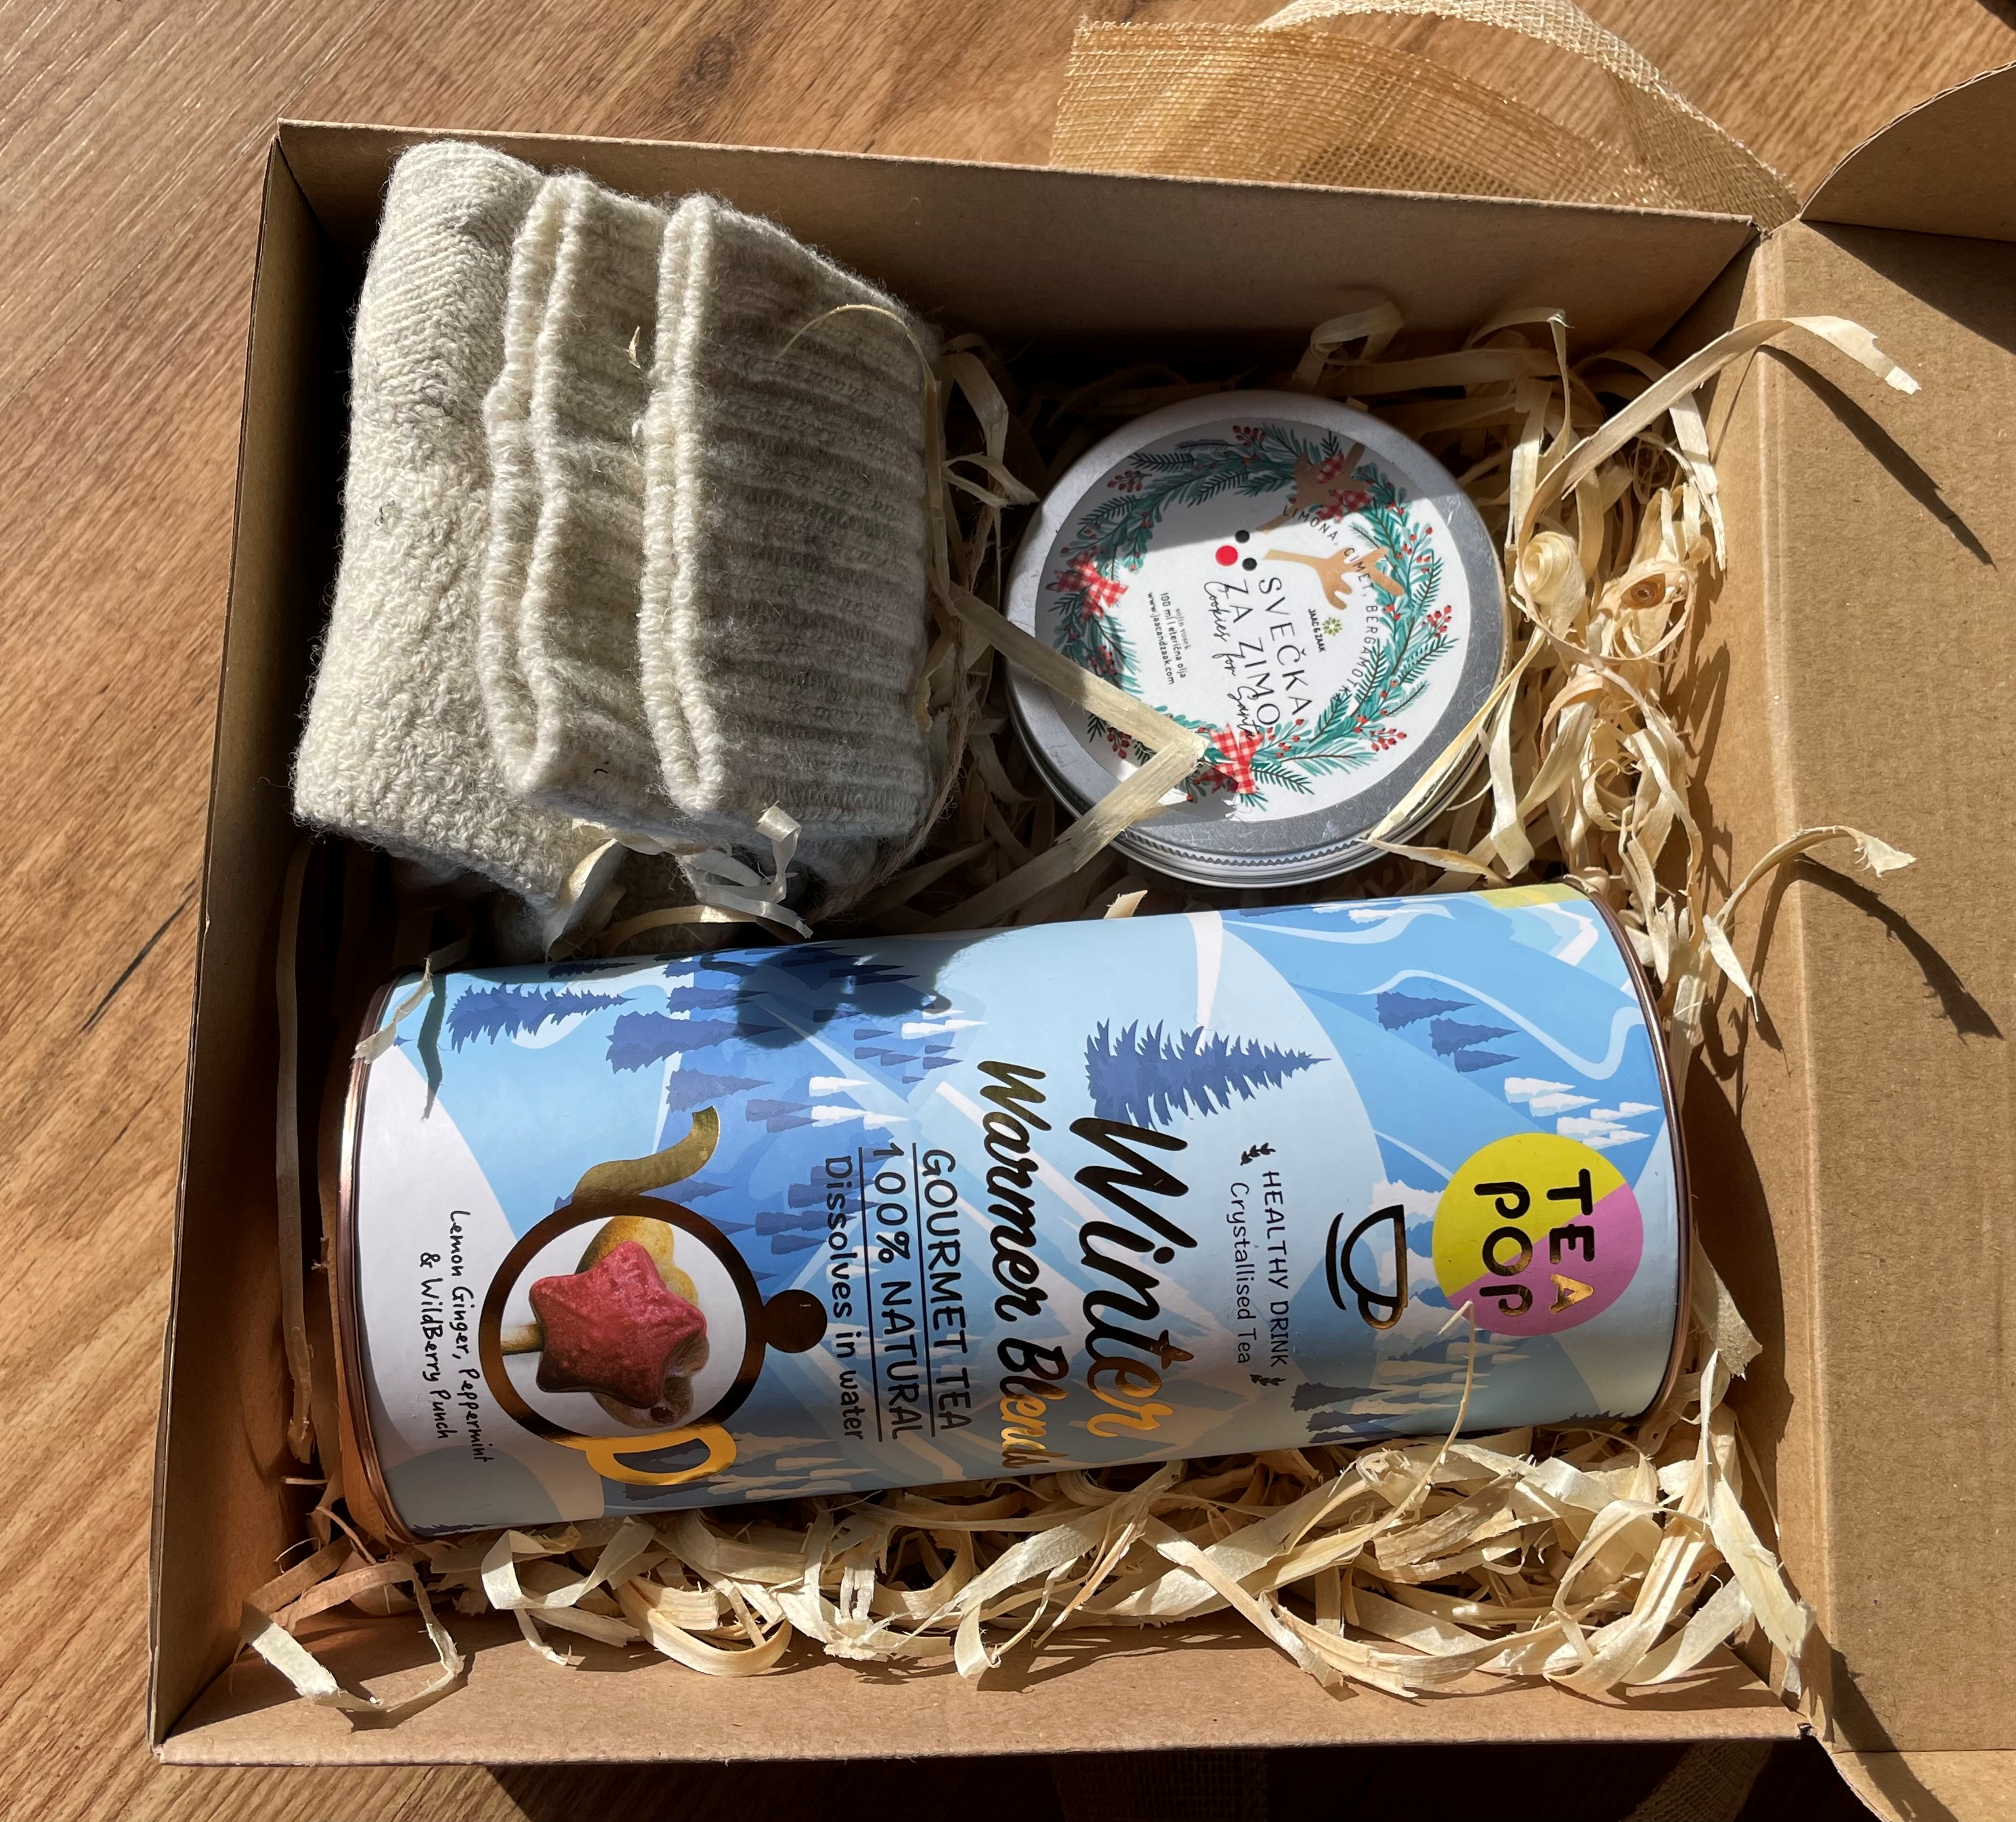 MAXI HYGGE paket - Tea pop Zimski čaj, volnene nogavice, v BEŽ barvi (velikost 36-41), zimska svečka v pločevinki